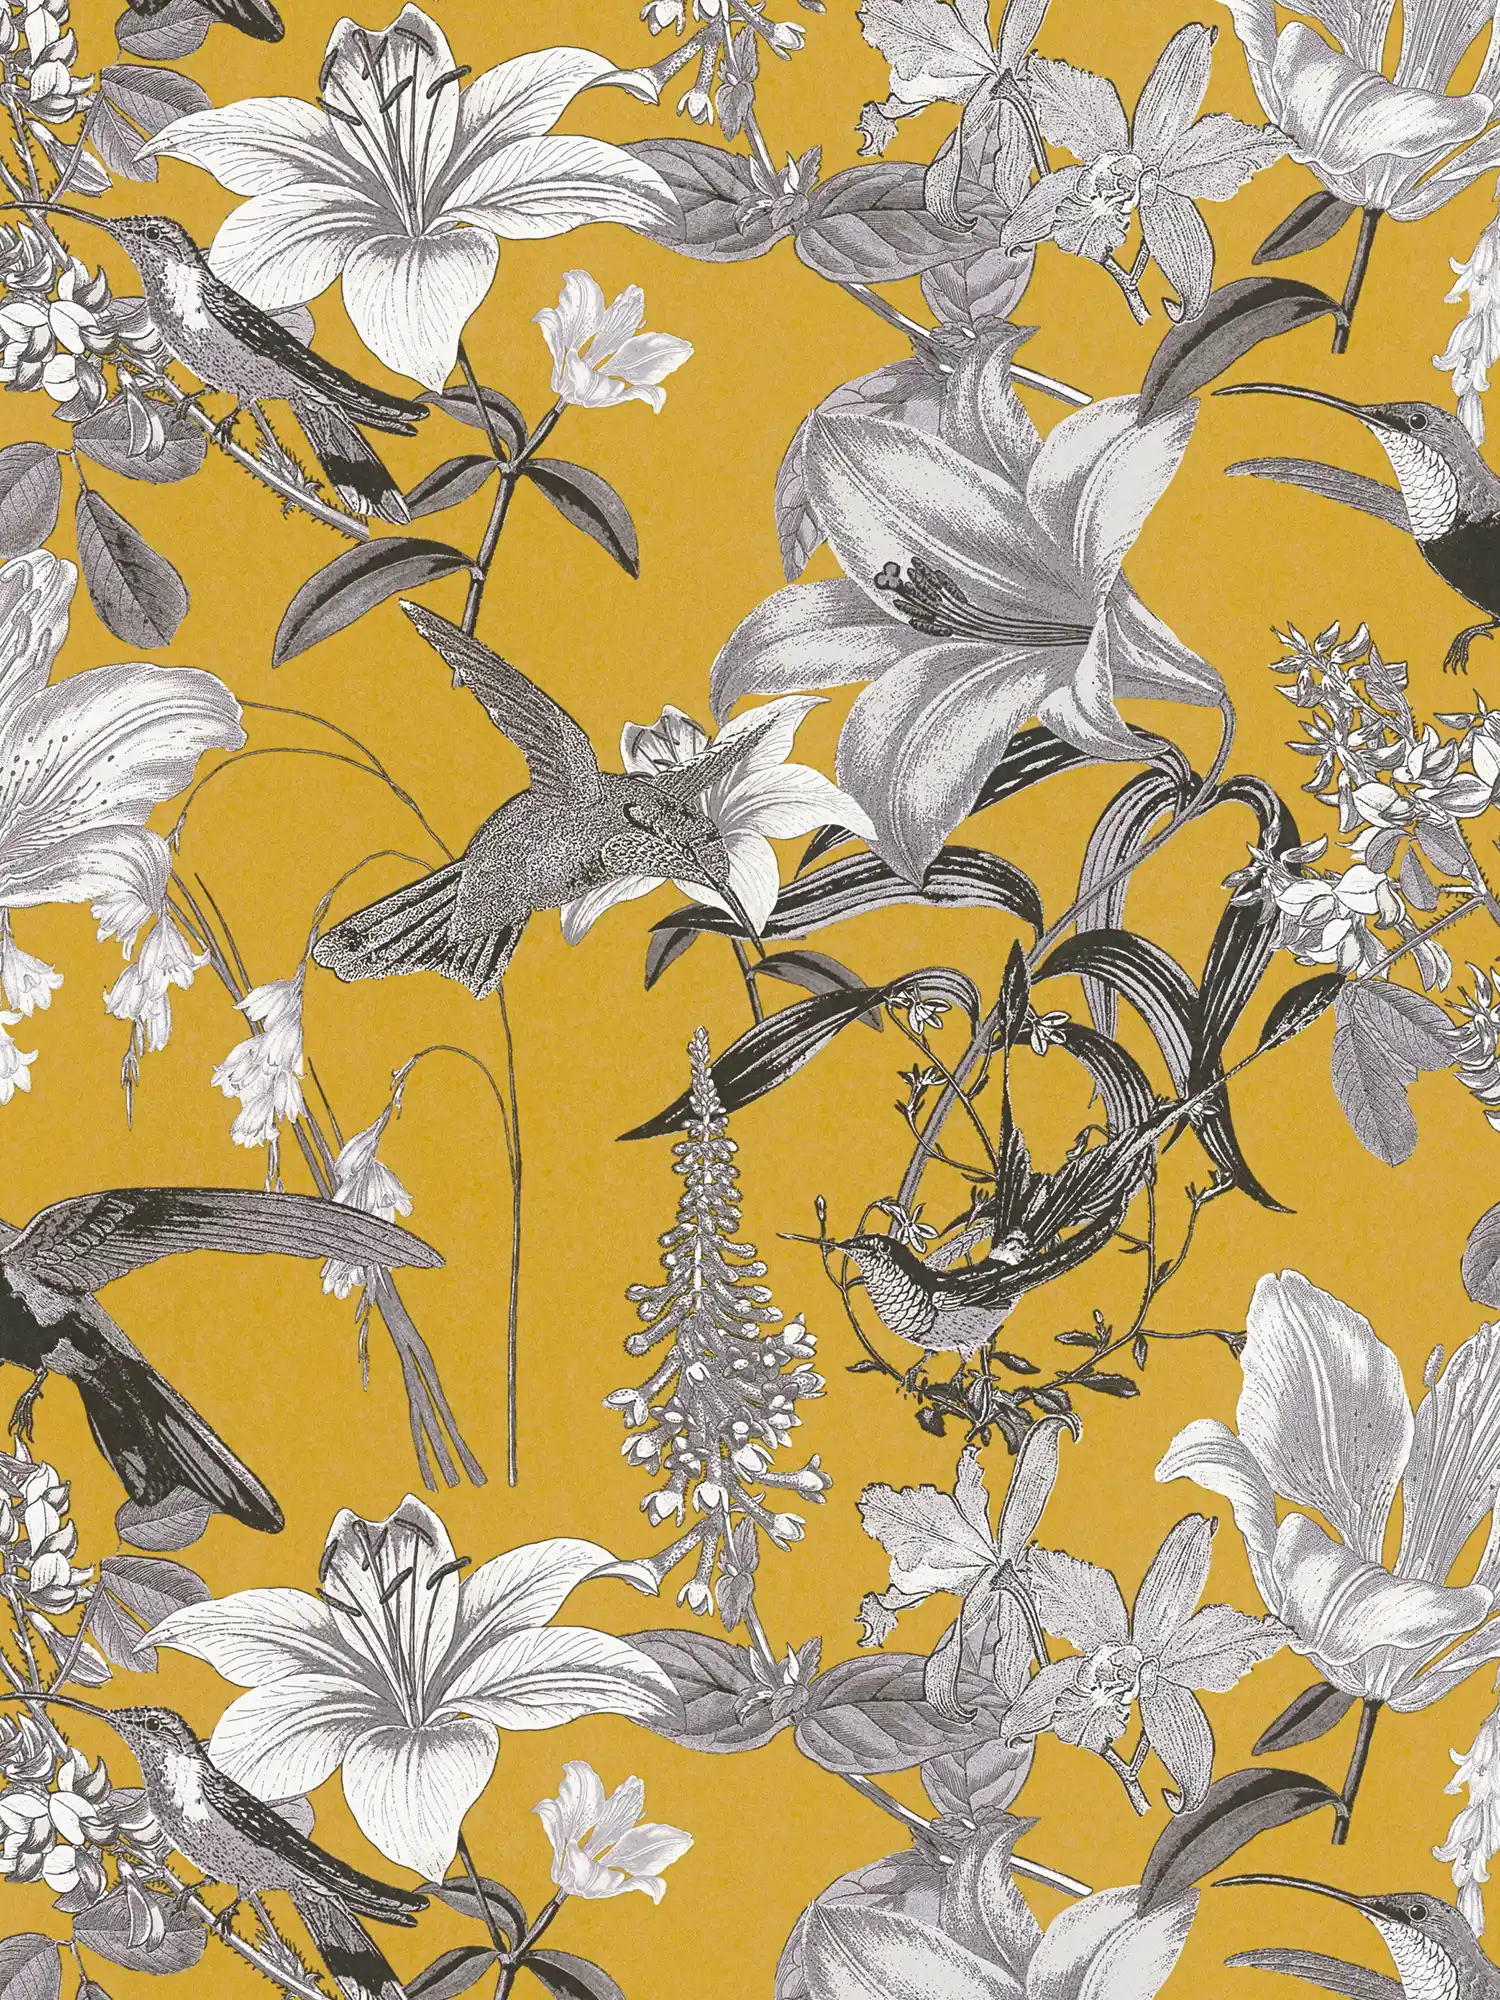 Papel pintado floral amarillo mostaza con flores y colibrí - amarillo, gris, negro
